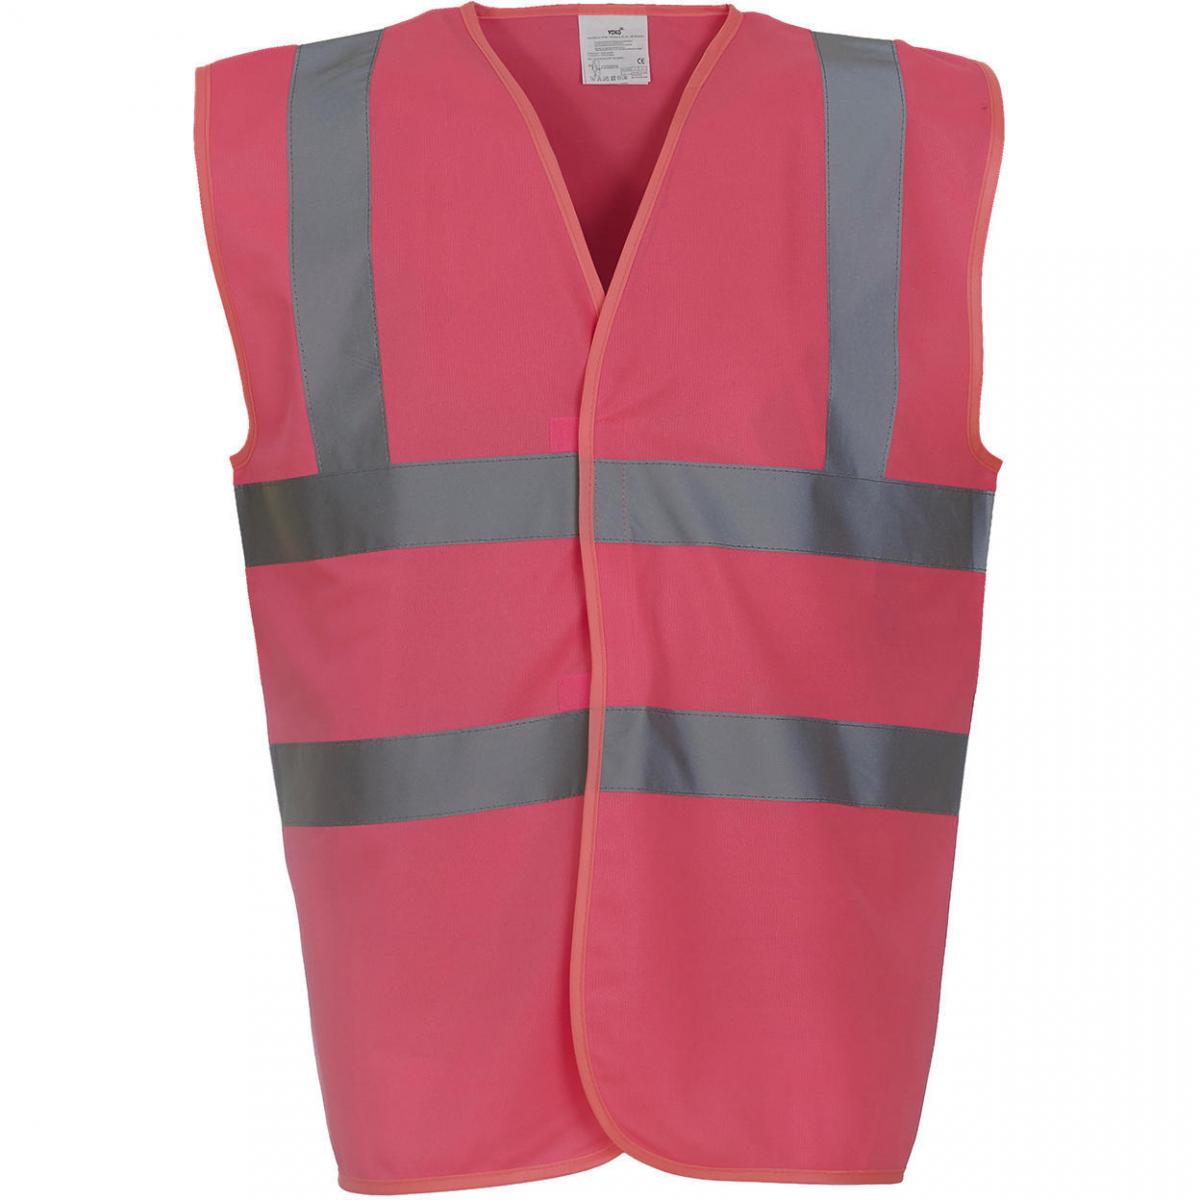 Hersteller: YOKO Herstellernummer: HVW100P Artikelbezeichnung: Fluo 2 Band+Brace Waistcoat - Sicherheitsweste - 3M™ Reflekt Farbe: Pink